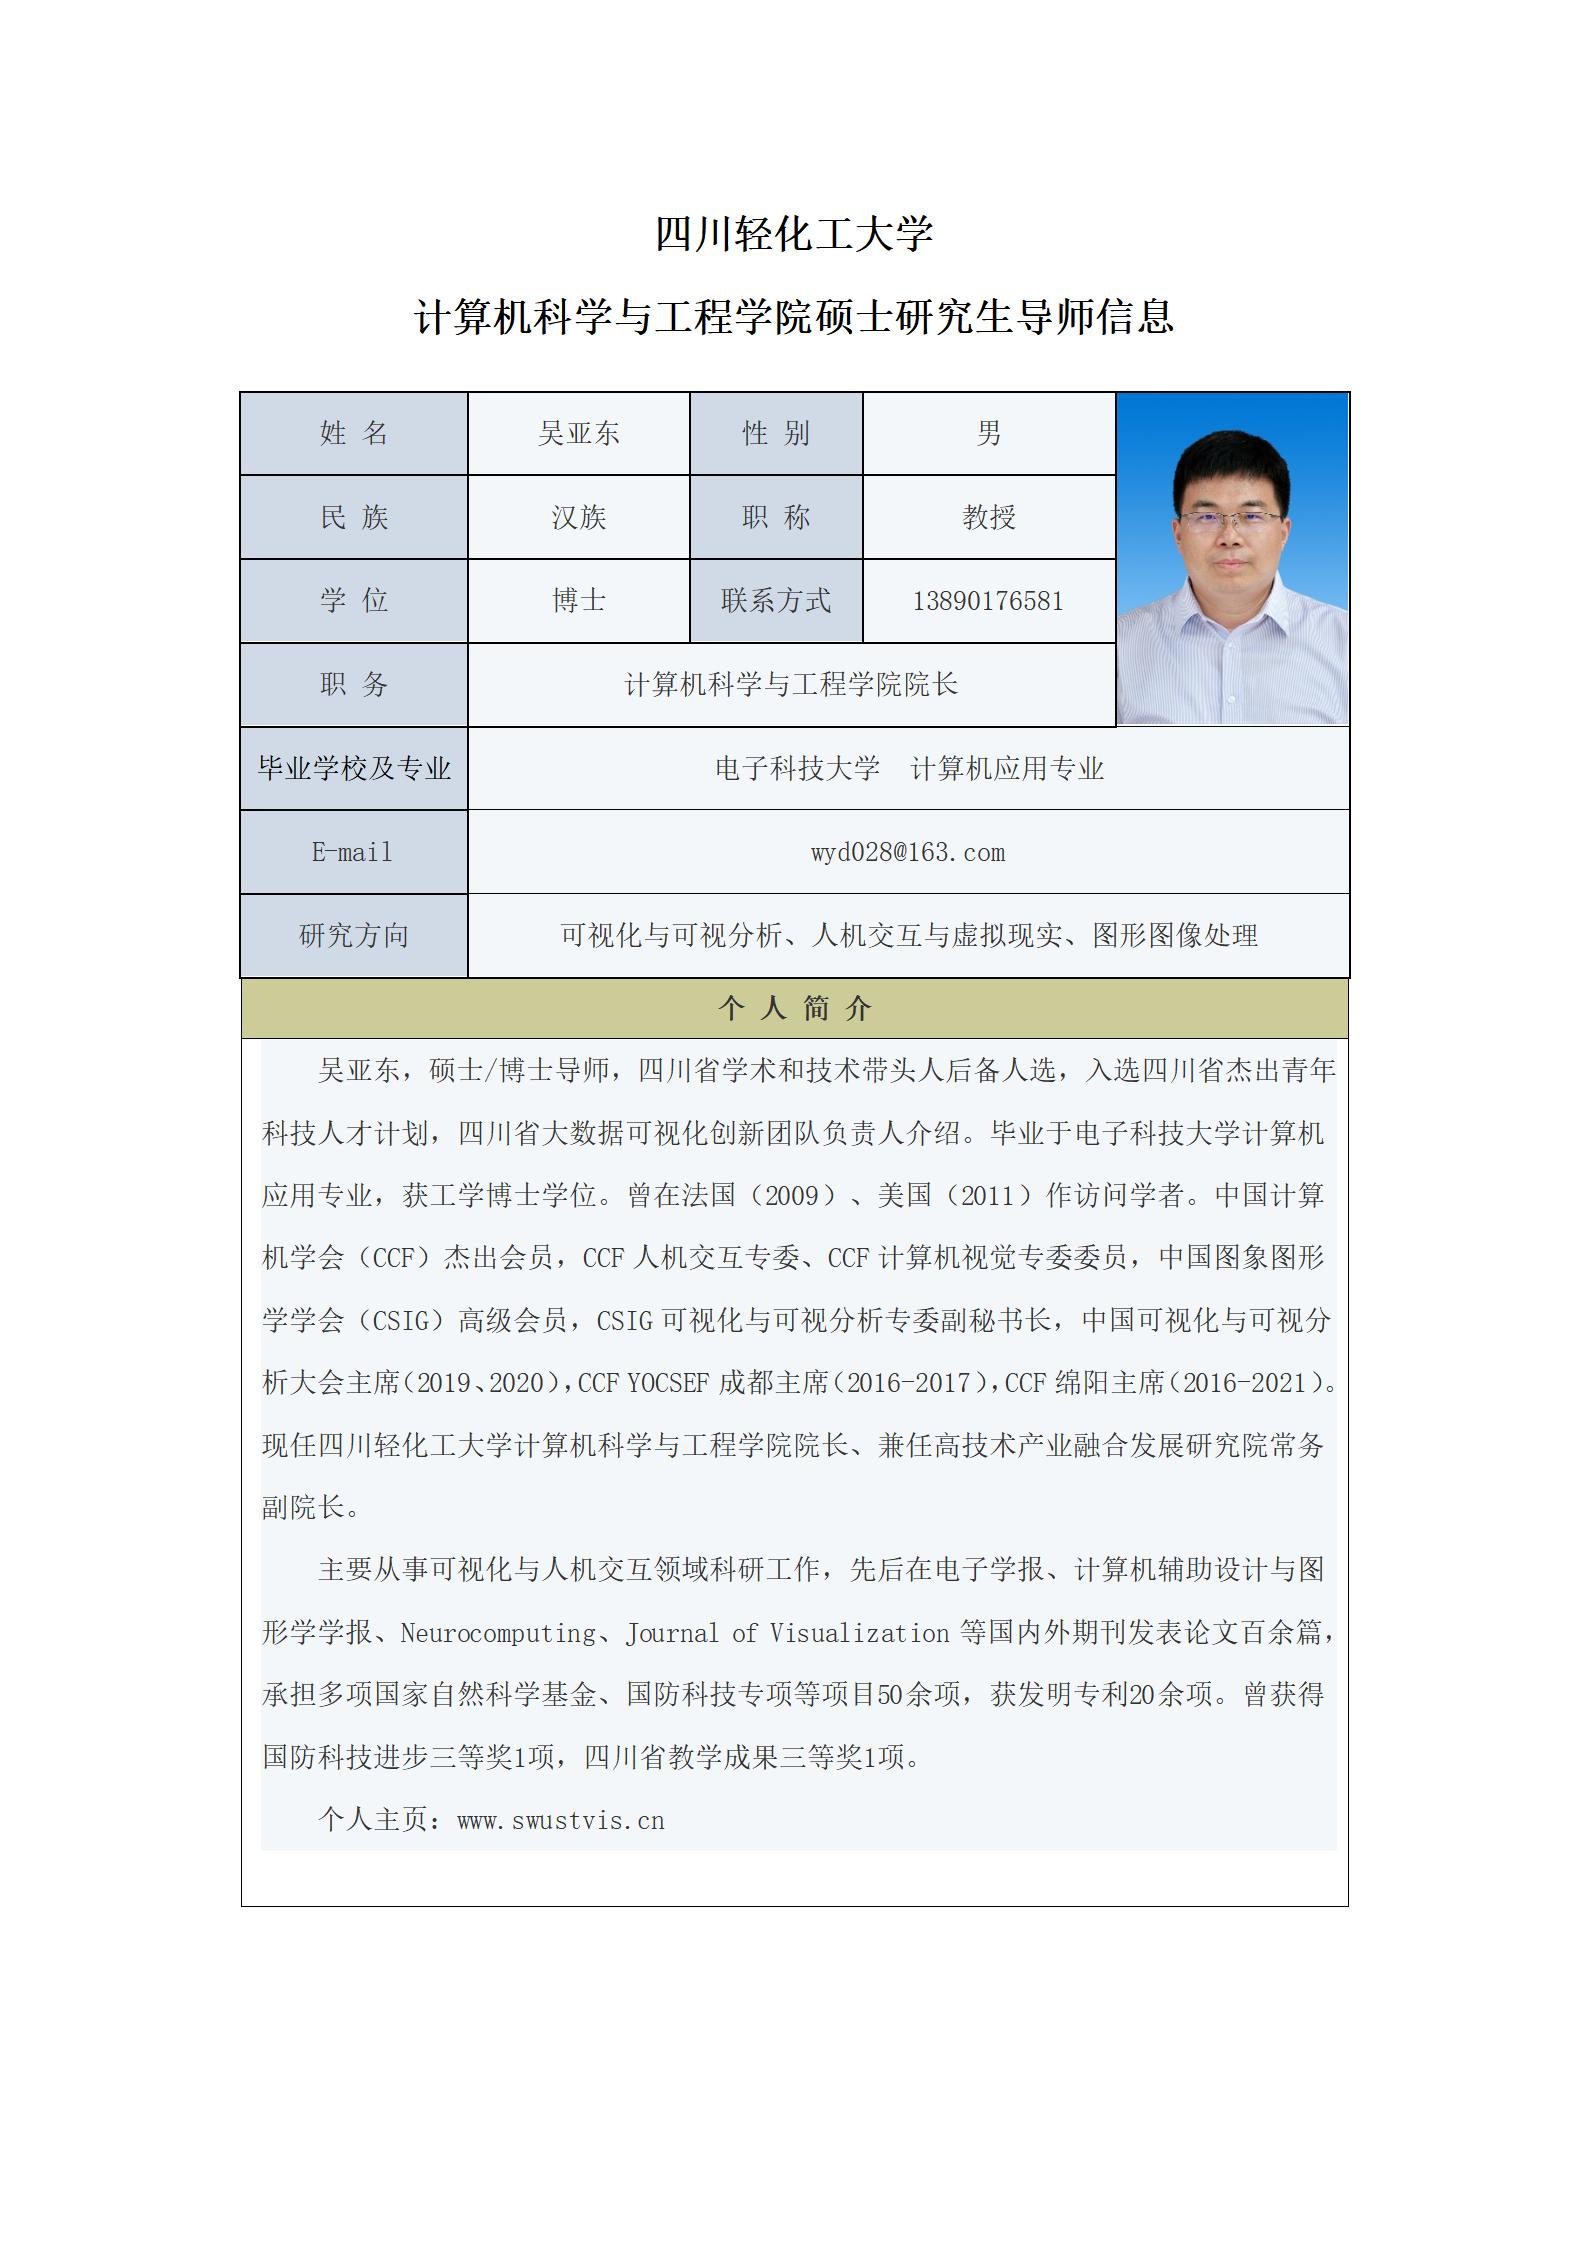 吴亚东-2023计算机科学与工程学院硕士生导师信息表_01.jpg